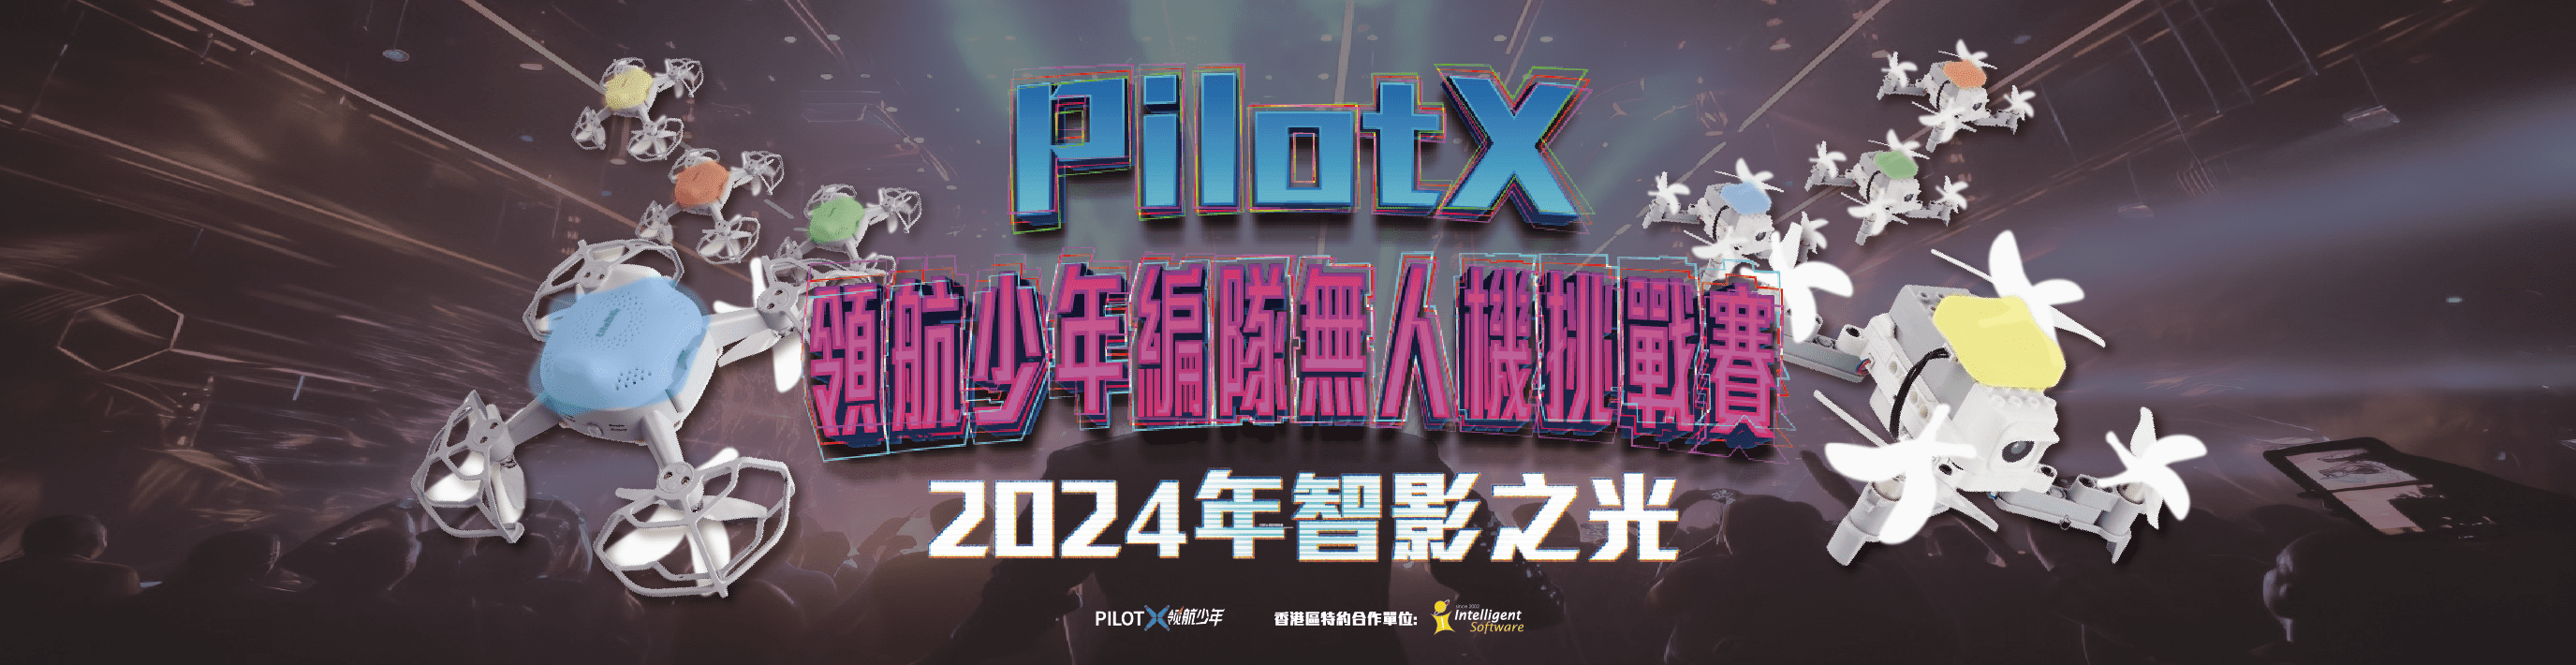 PilotX智影之光編隊賽